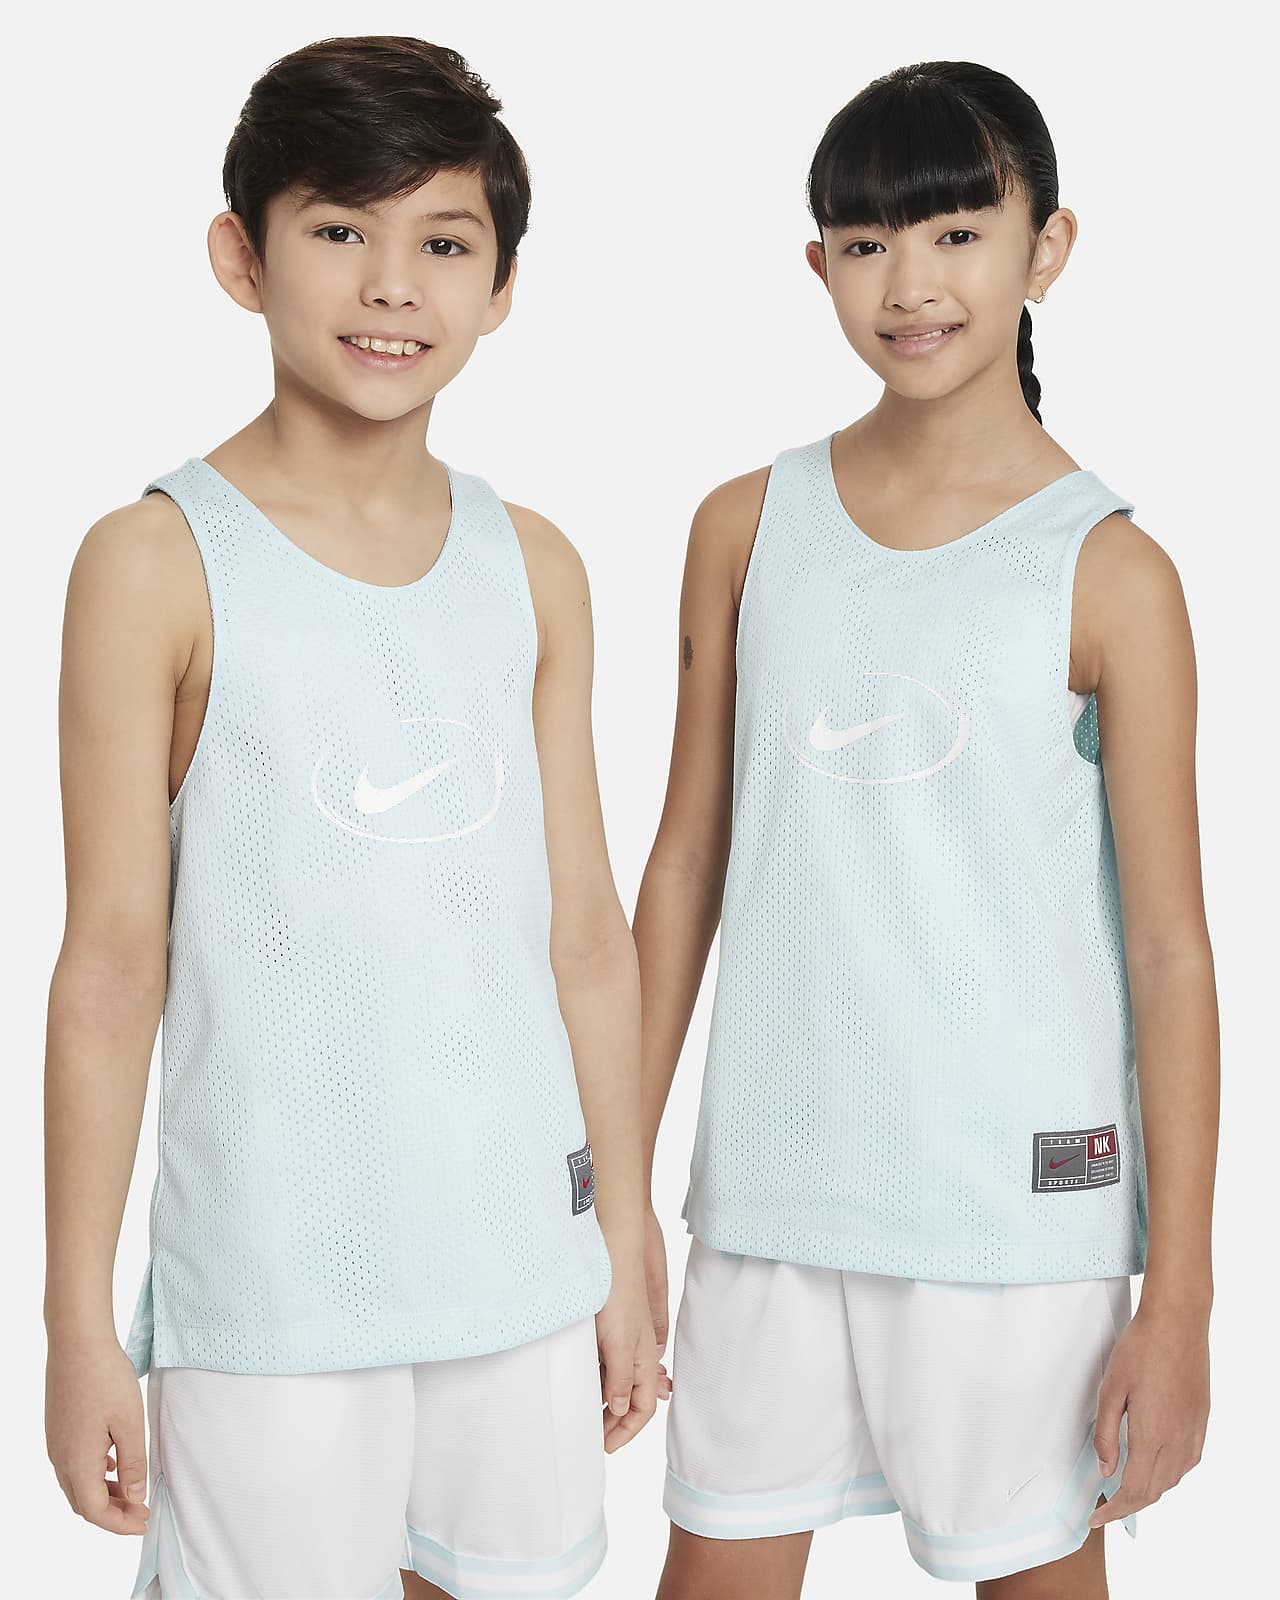 Dwustronna koszulka dla dużych dzieci Nike Culture of Basketball